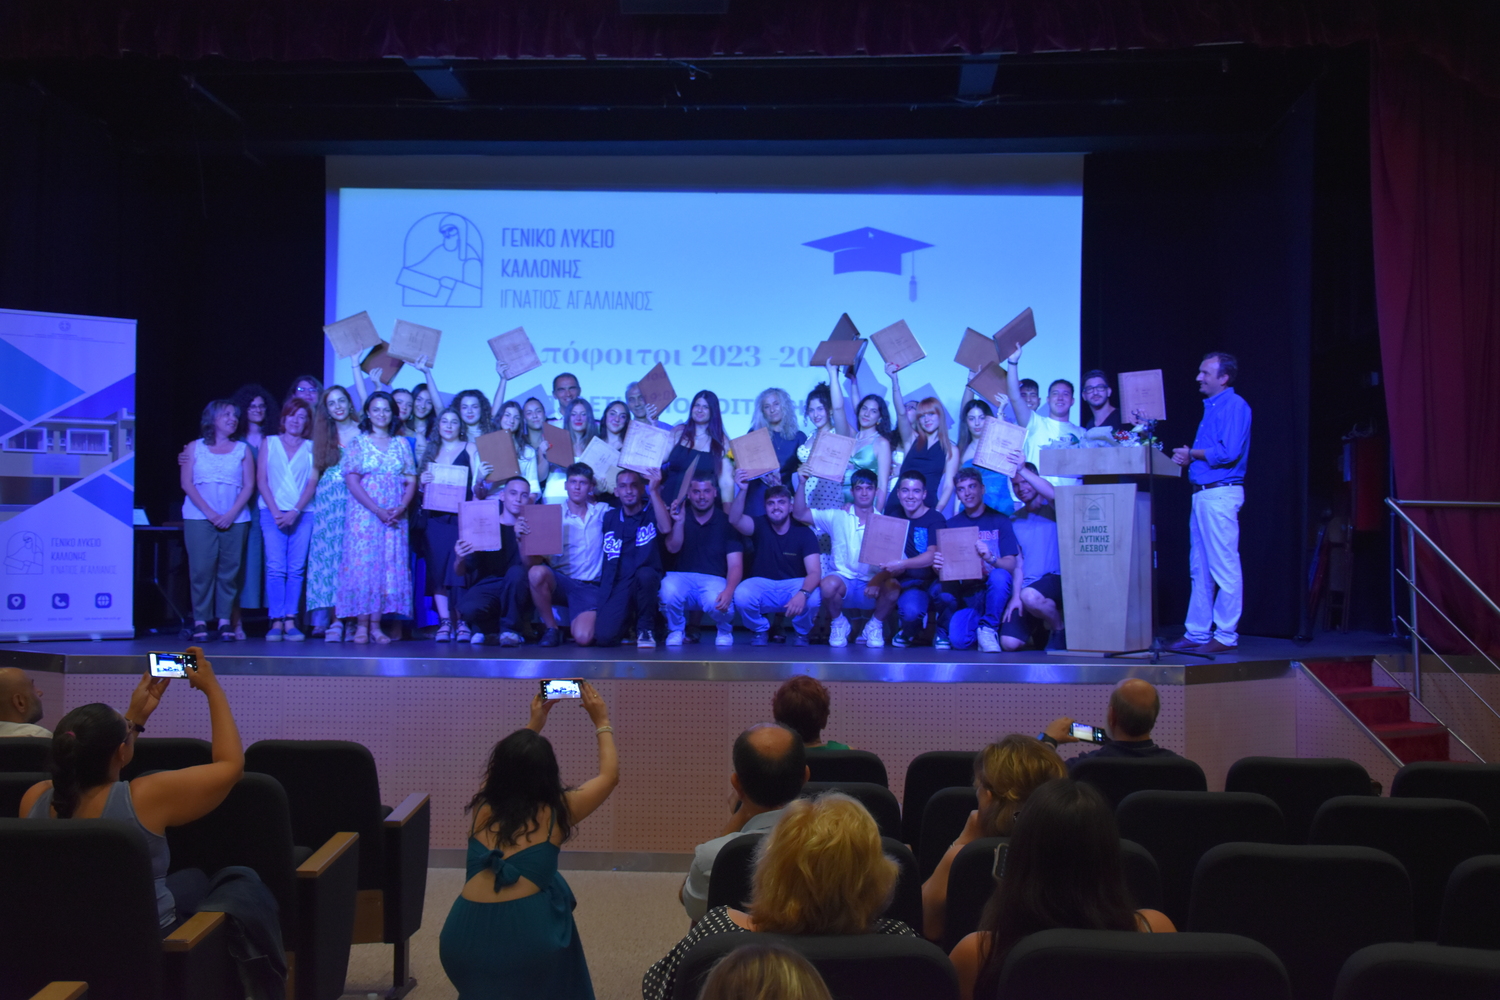 Λαμπρή τελετή για την αποφοίτηση των μαθητών του ΓΕΛ ΚΑλλονής και τιμητικοί έπαινοι σε απόφοιτους